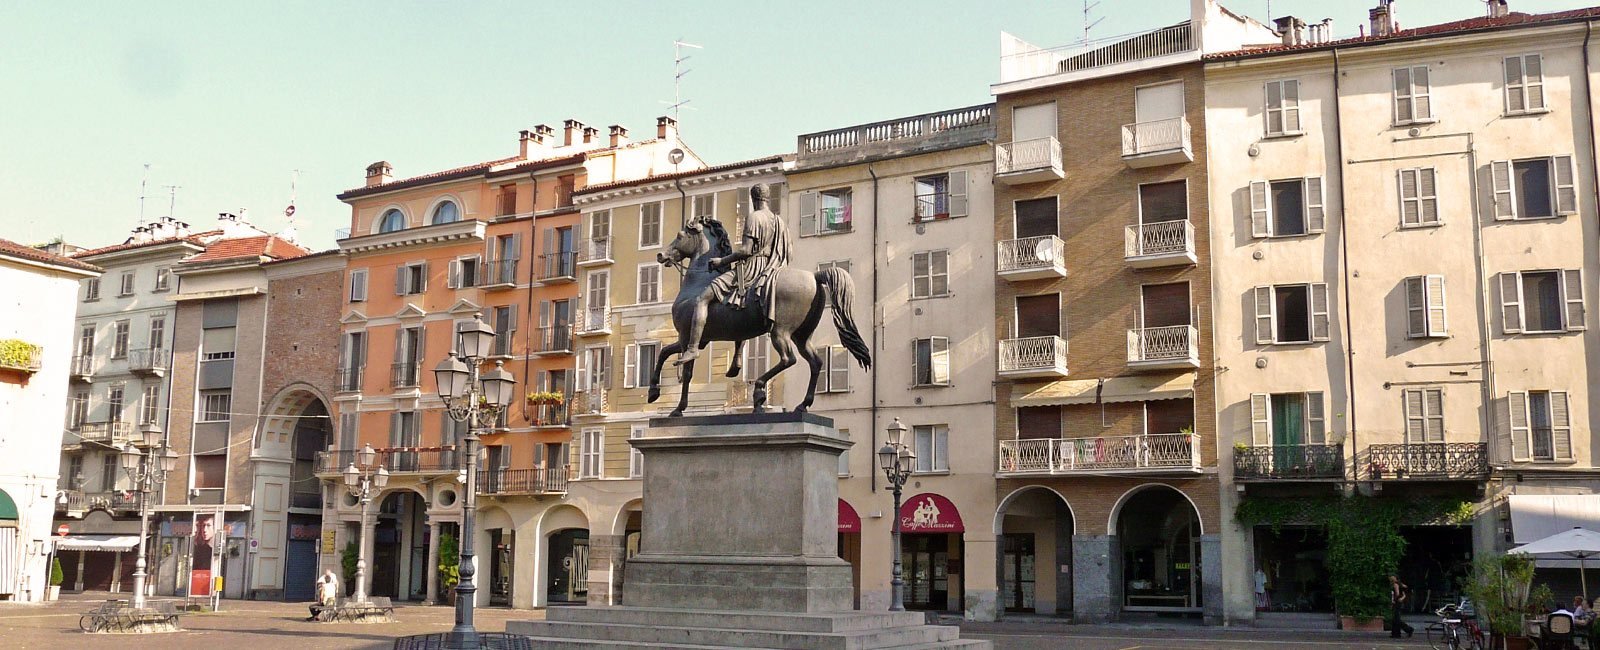 Casale Monferrato si candida come Capitale Italiana della Cultura